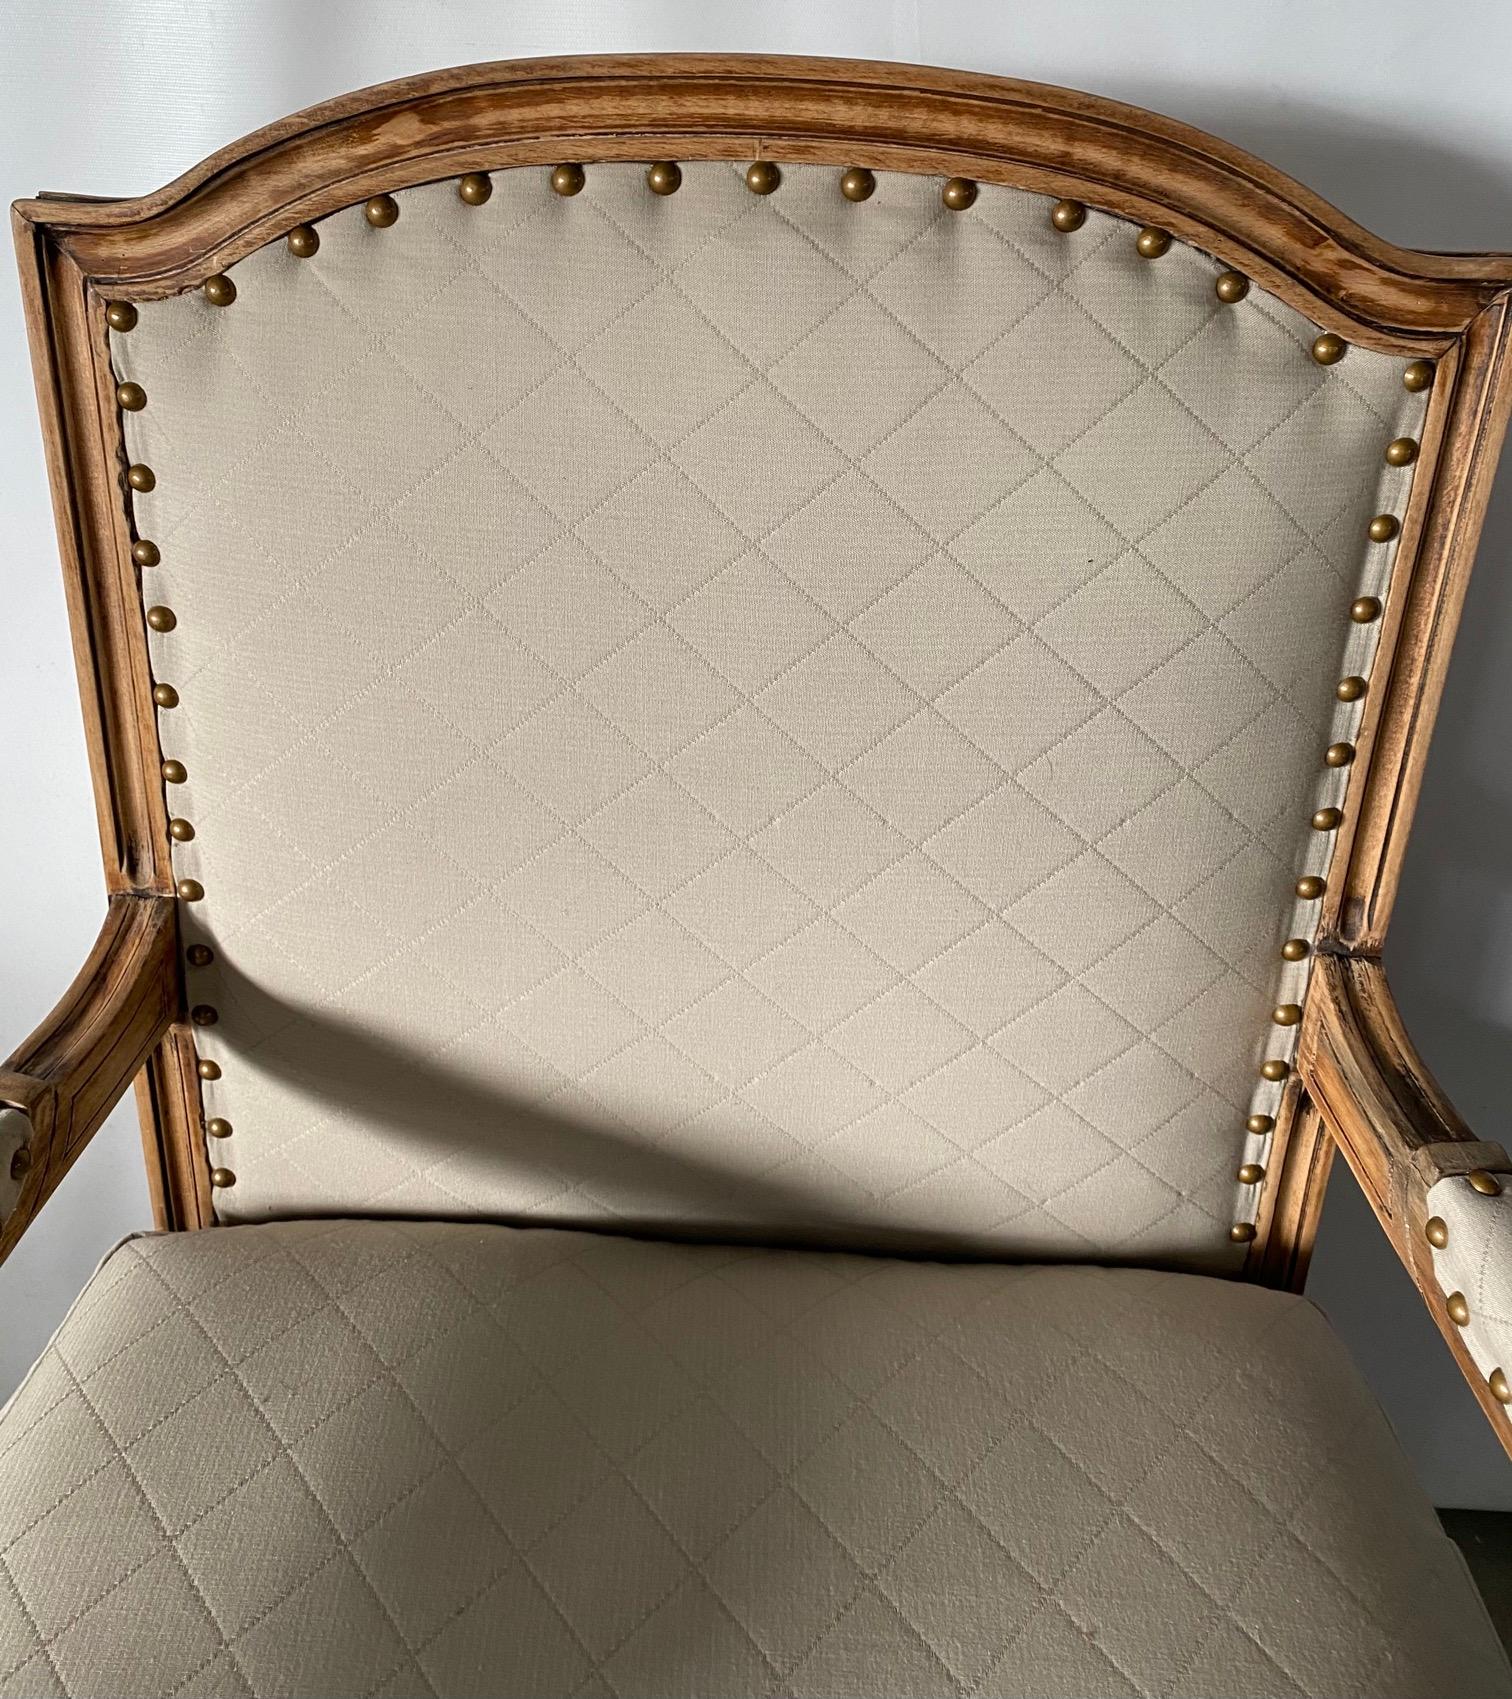 Elégant fauteuil français de style Louis XVI avec une structure en bois blanchi, un pied cannelé et des blocs cubiques décorés de fleurons, tapissé en tissu beige classique adapté. Convient aux chaises de salle à manger ou de bureau, aux chaises de